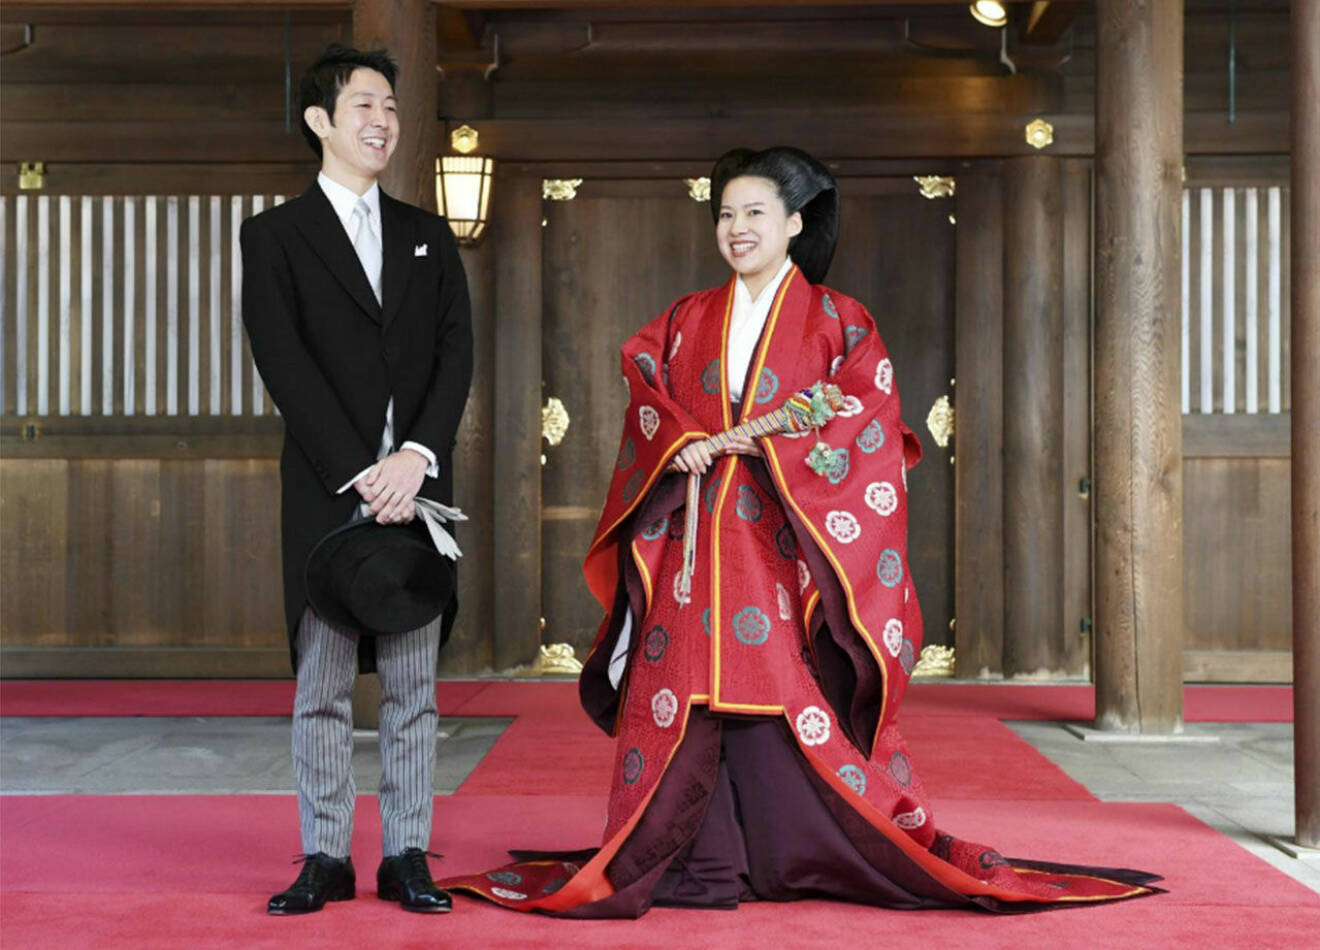 Prinsessan Ayako gifter sig